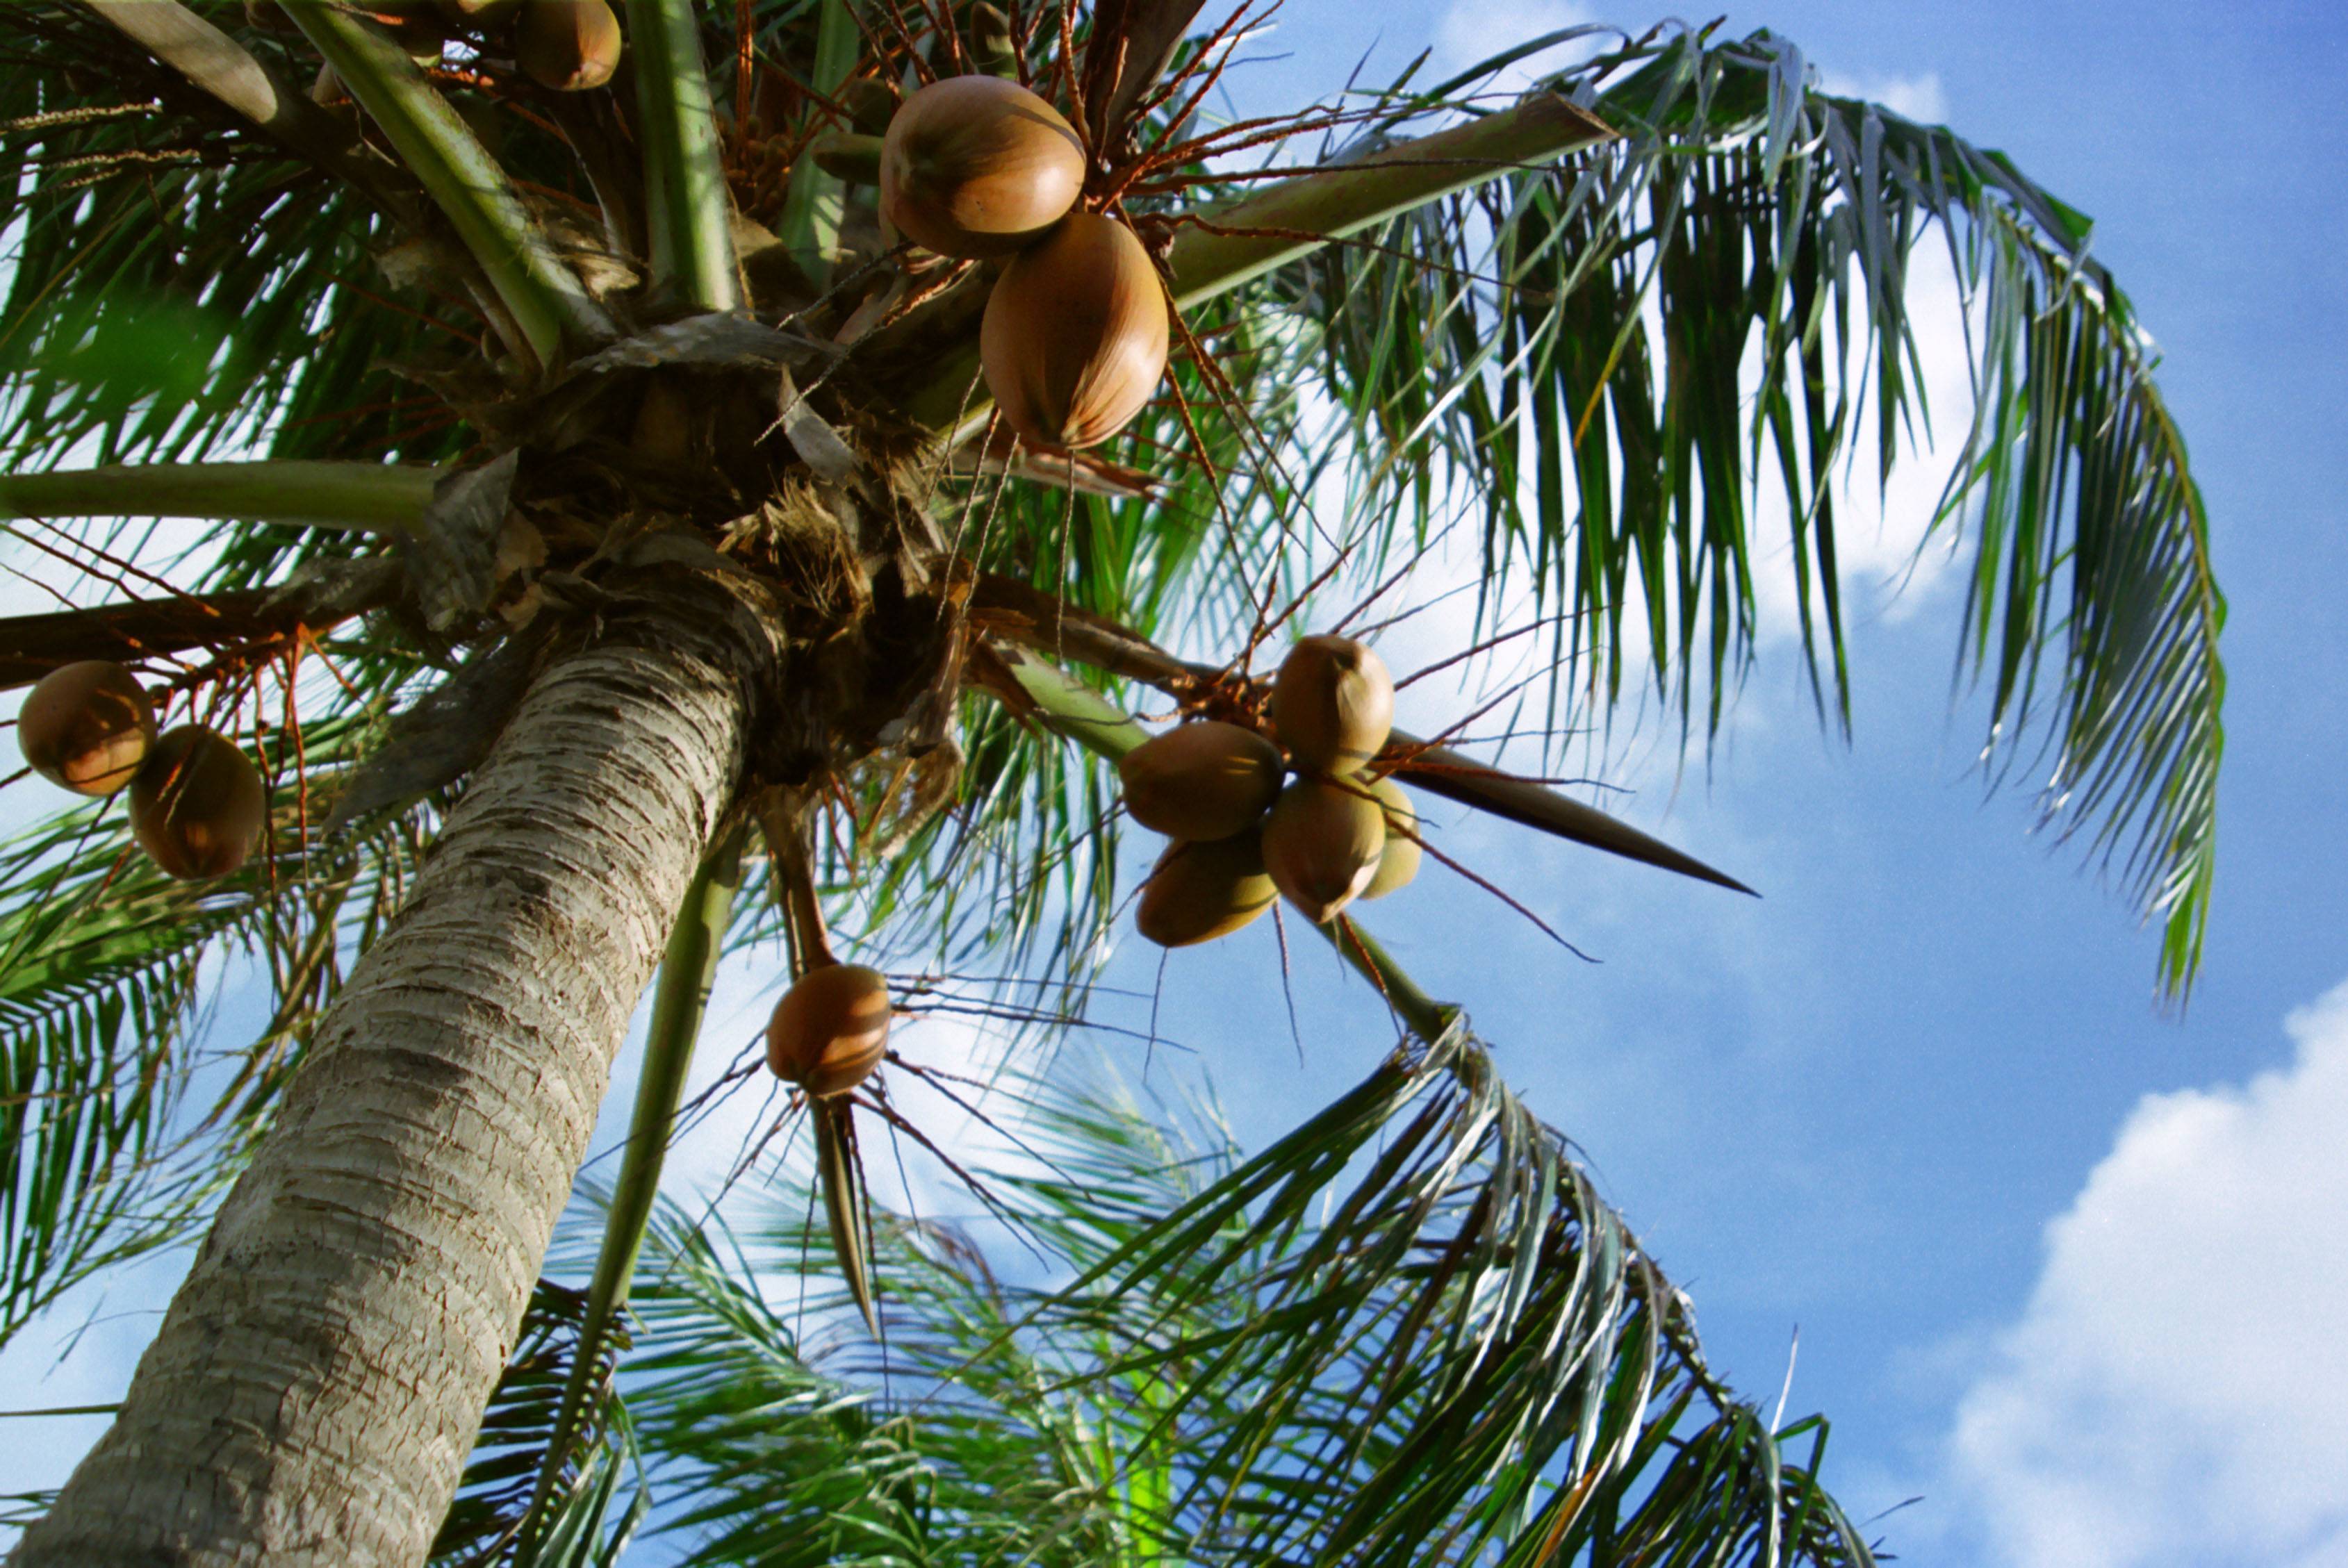 Как самостоятельно вырастить кокос или кокосовую пальму дома из кокосового ореха на подоконнике. методики и технологии проращивания кокосового ореха и культивации кокосовой пальмы в домашних условиях с подробным описанием и наглядными фото